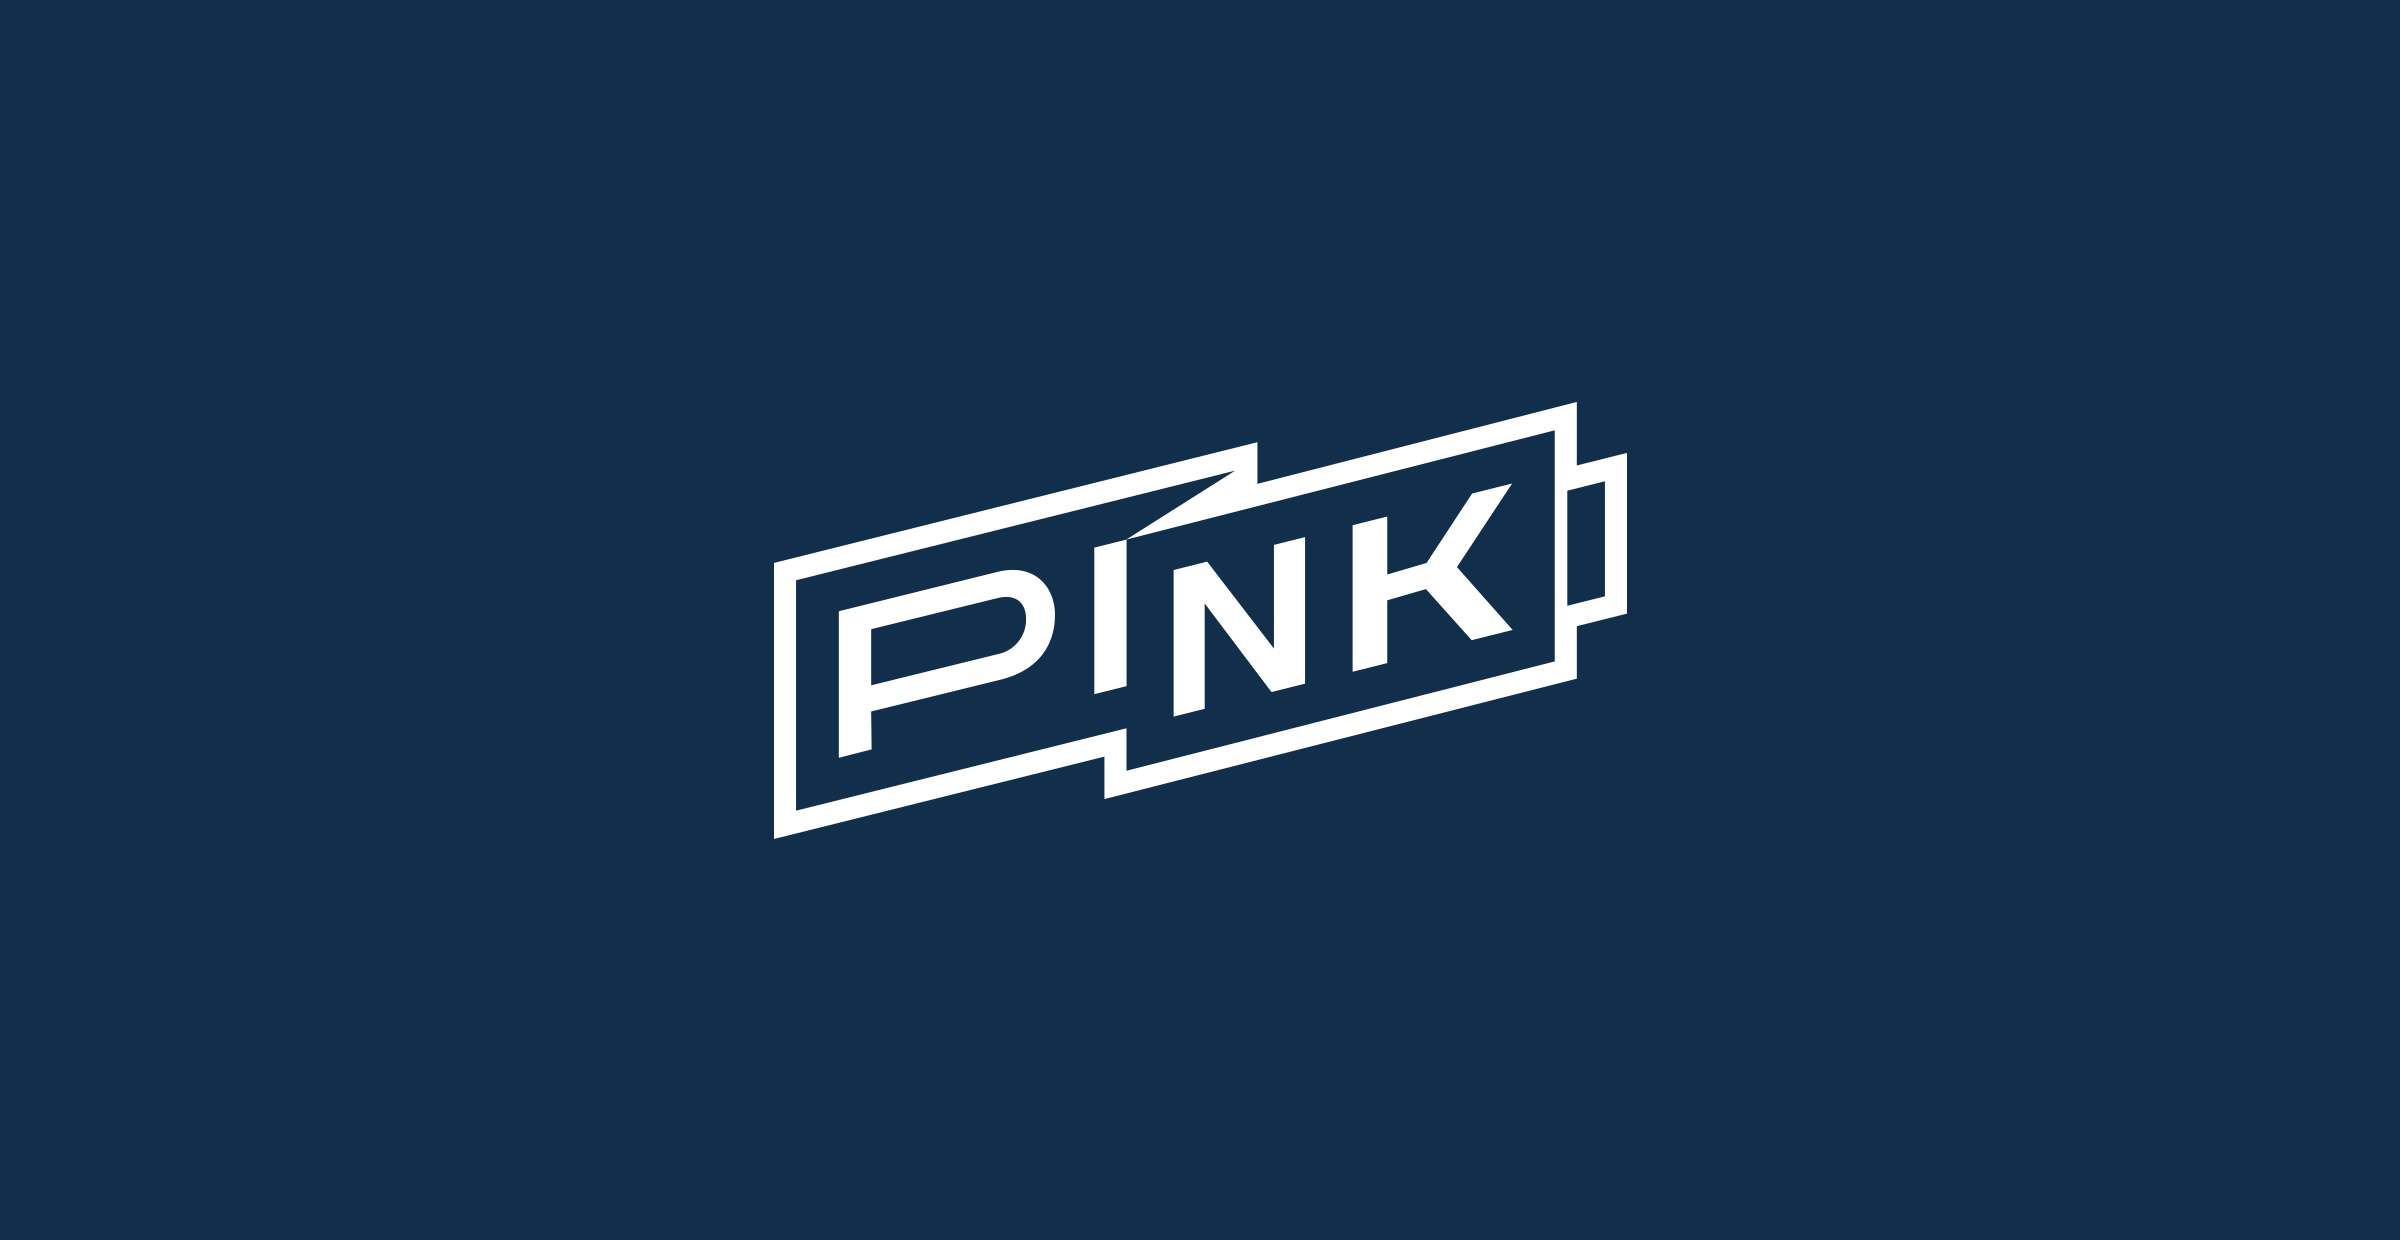 pink_logo.jpg
